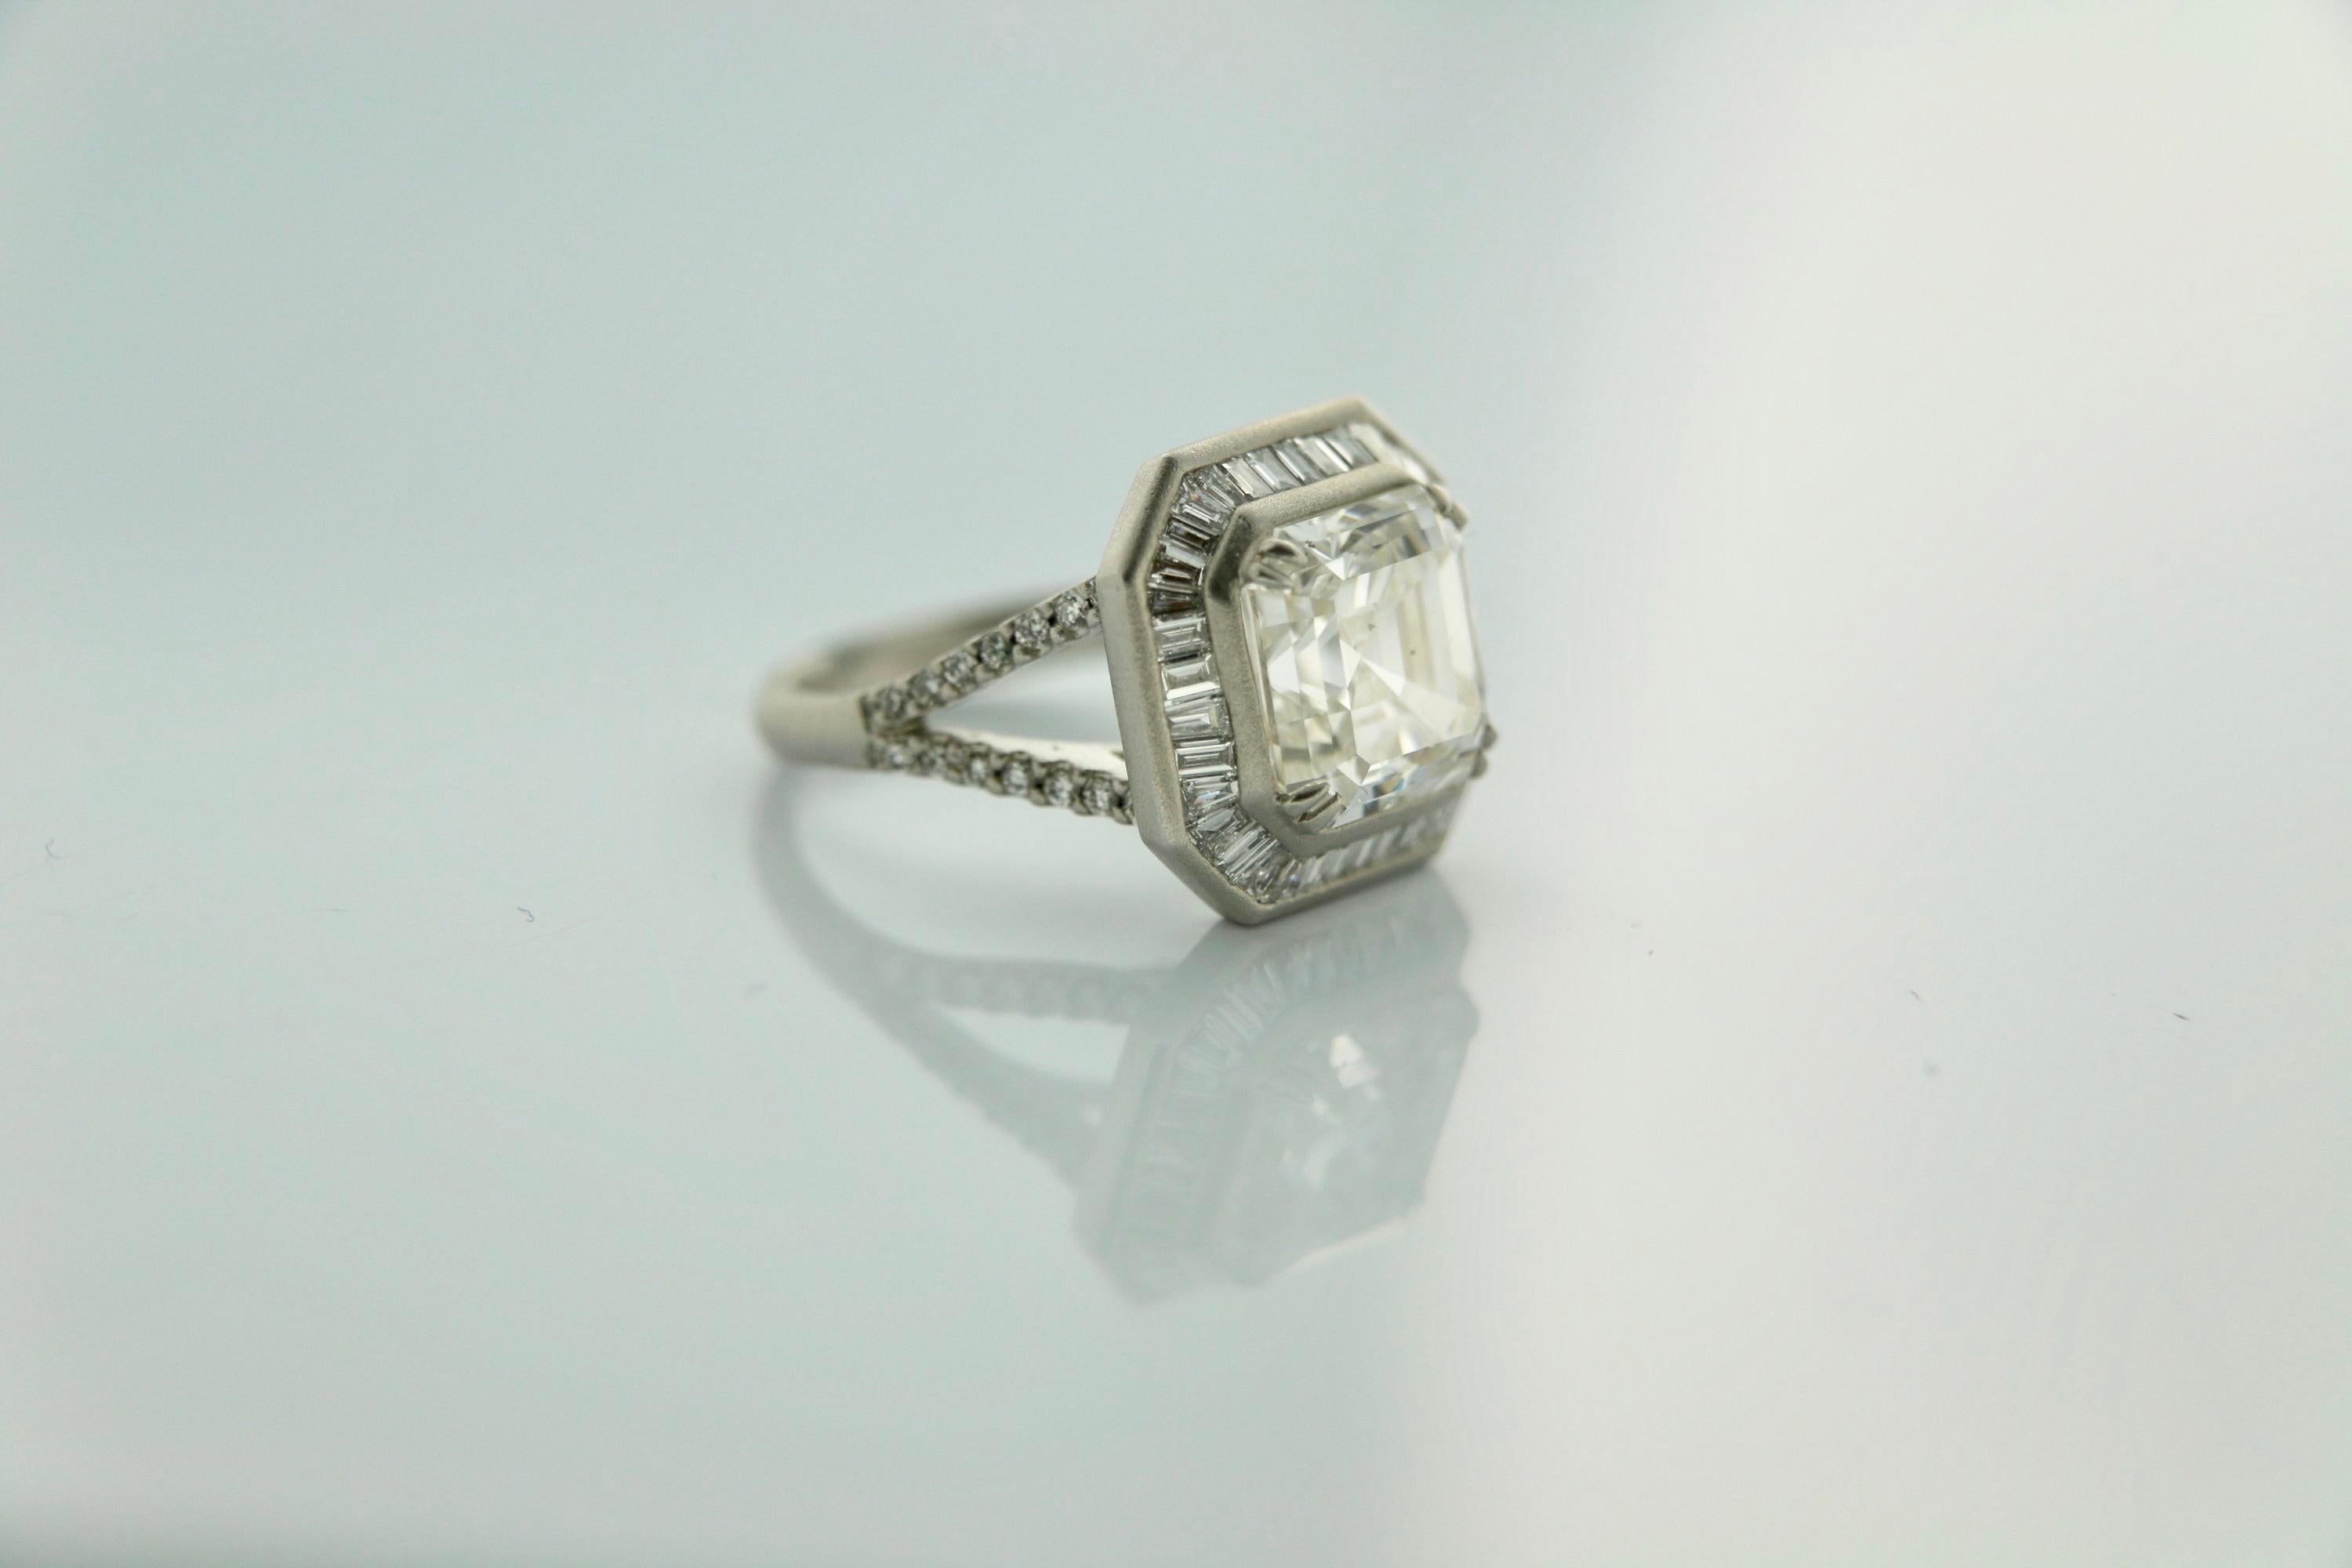 Dieser spektakuläre Diamantring mit Asscher-Schliff sieht aus wie pures, funkelndes Eis und ist ein einzigartiger Ring. Entworfen von Moguldiam Inc mit einer maßgeschneiderten Montage in 18 k weißem satiniertem Gold, seine schöne Mitte Asscher